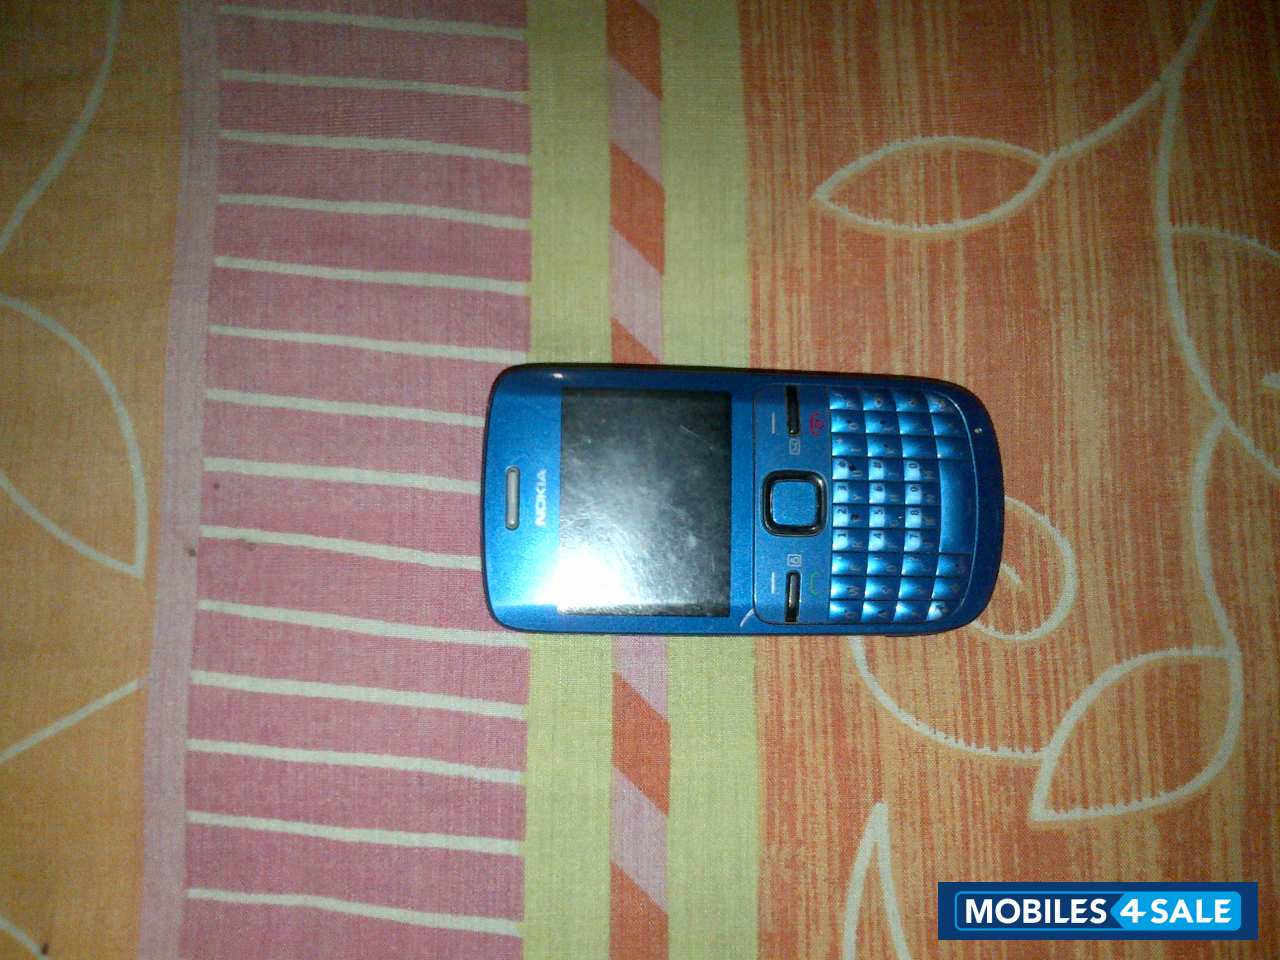 Blue Nokia C3